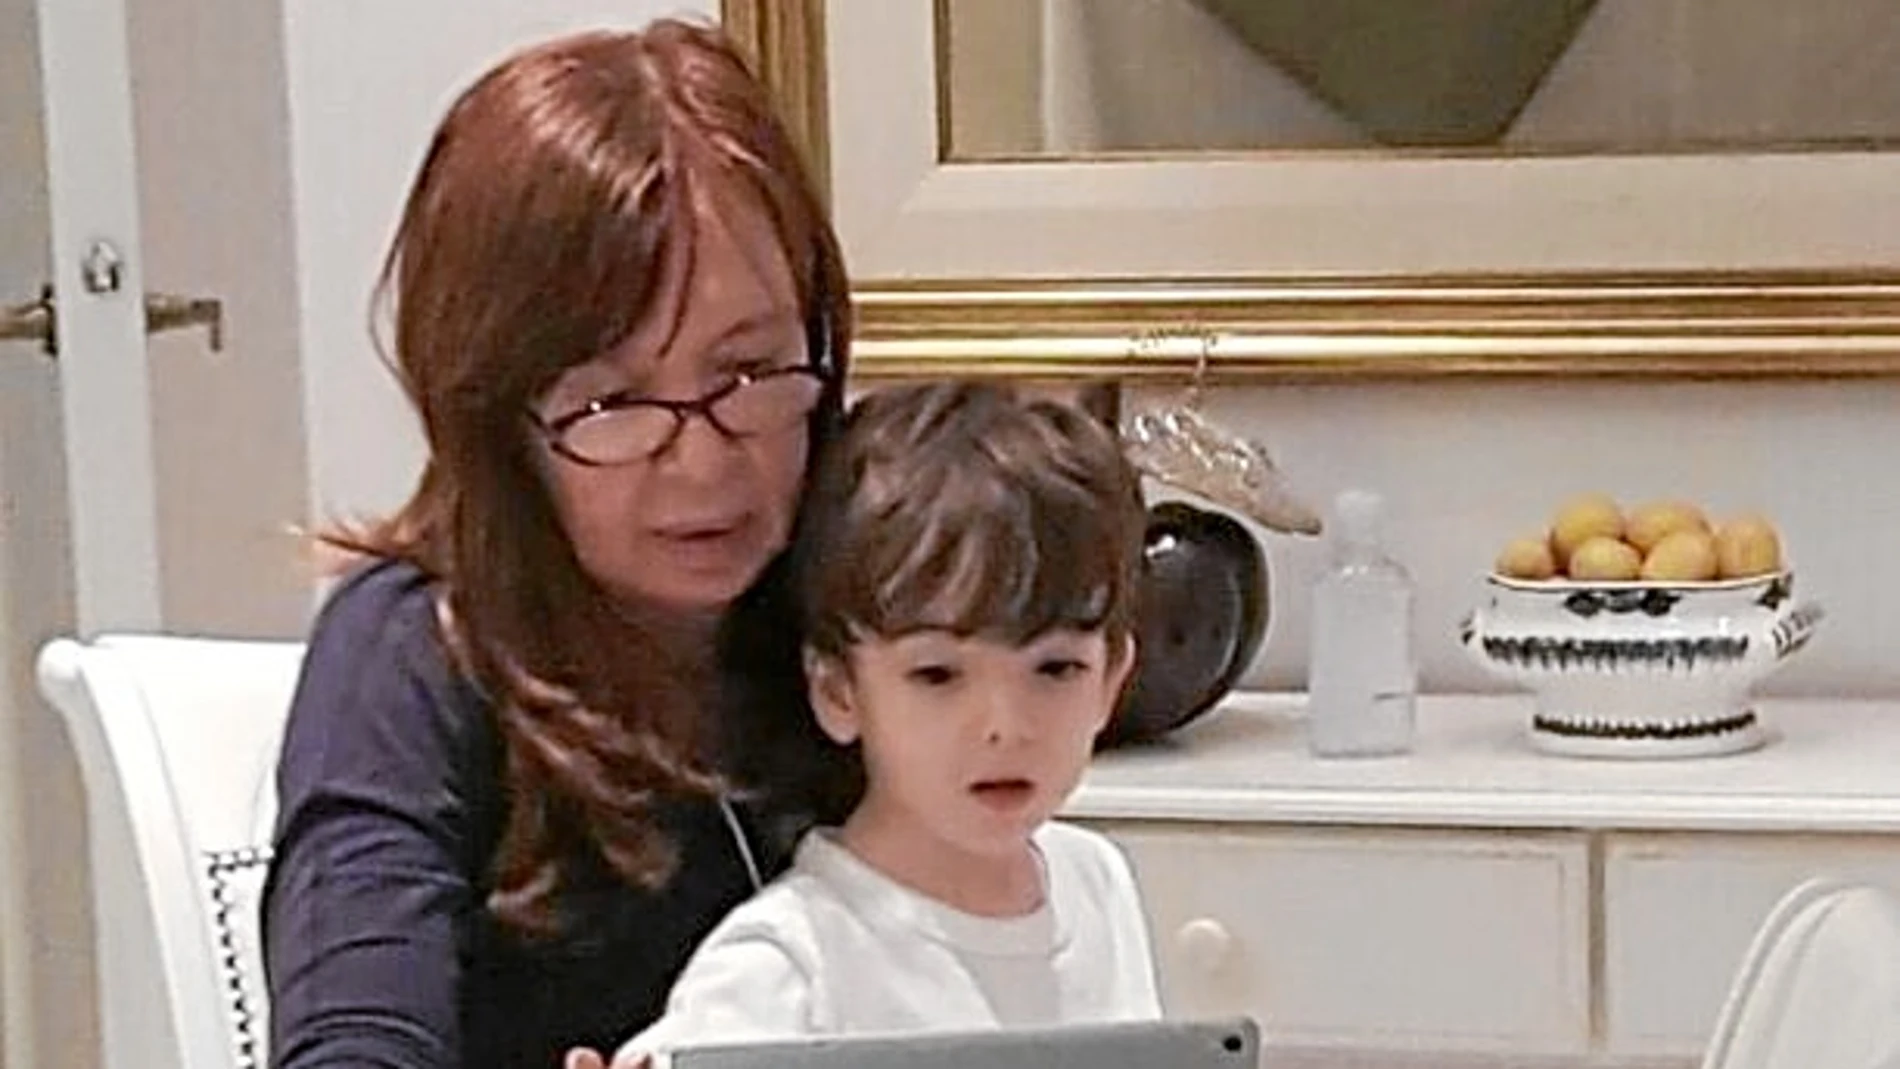 La ex presidenta Cristina Fernández de Kirchner no pudo ir a votar y siguió los resultados con su nieto, ayer